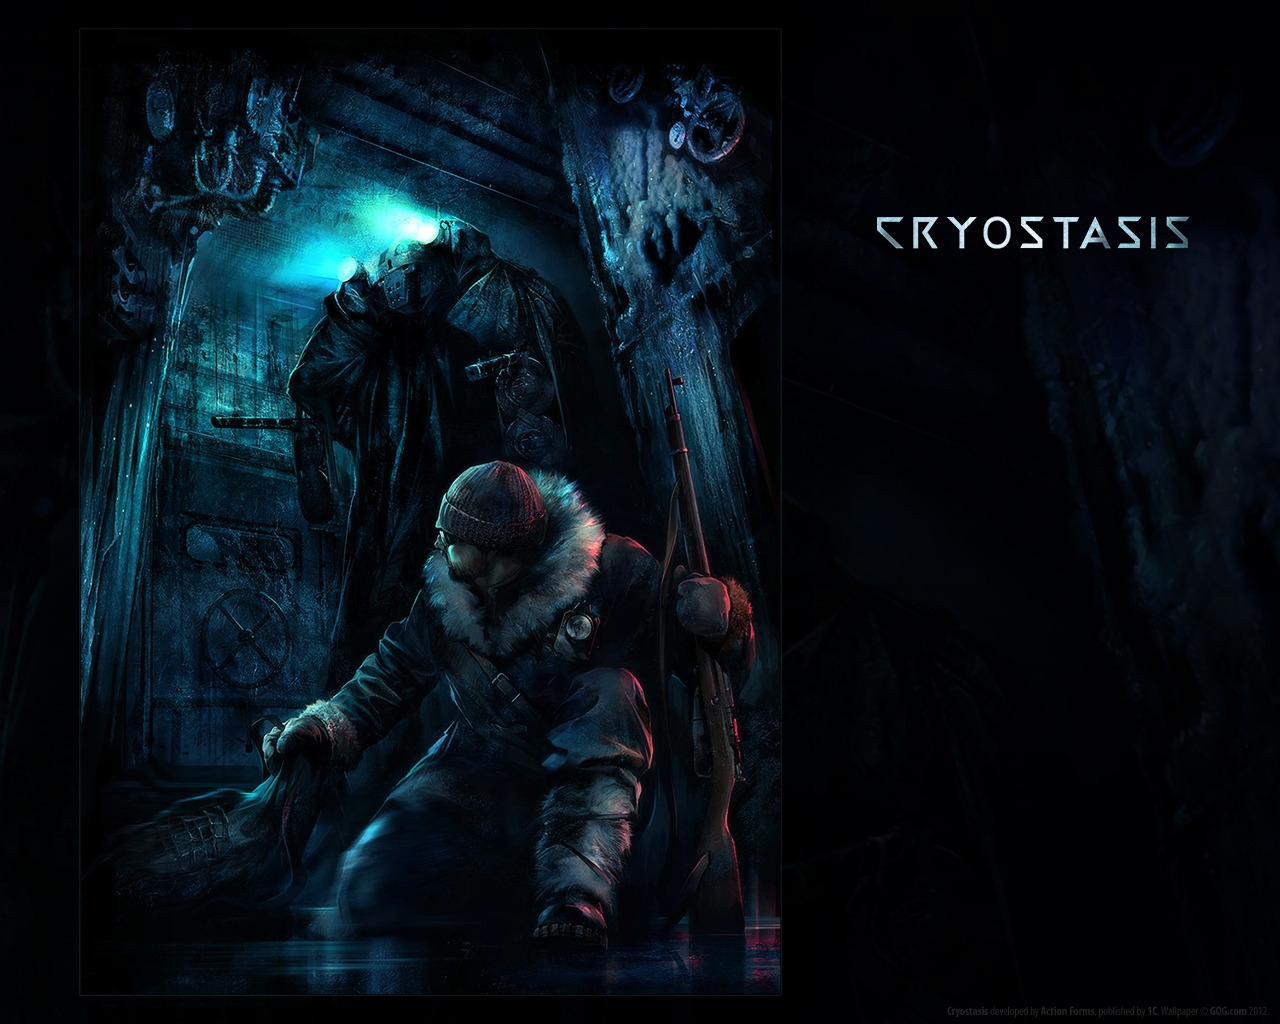 Cryostasis for 1280 x 1024 resolution